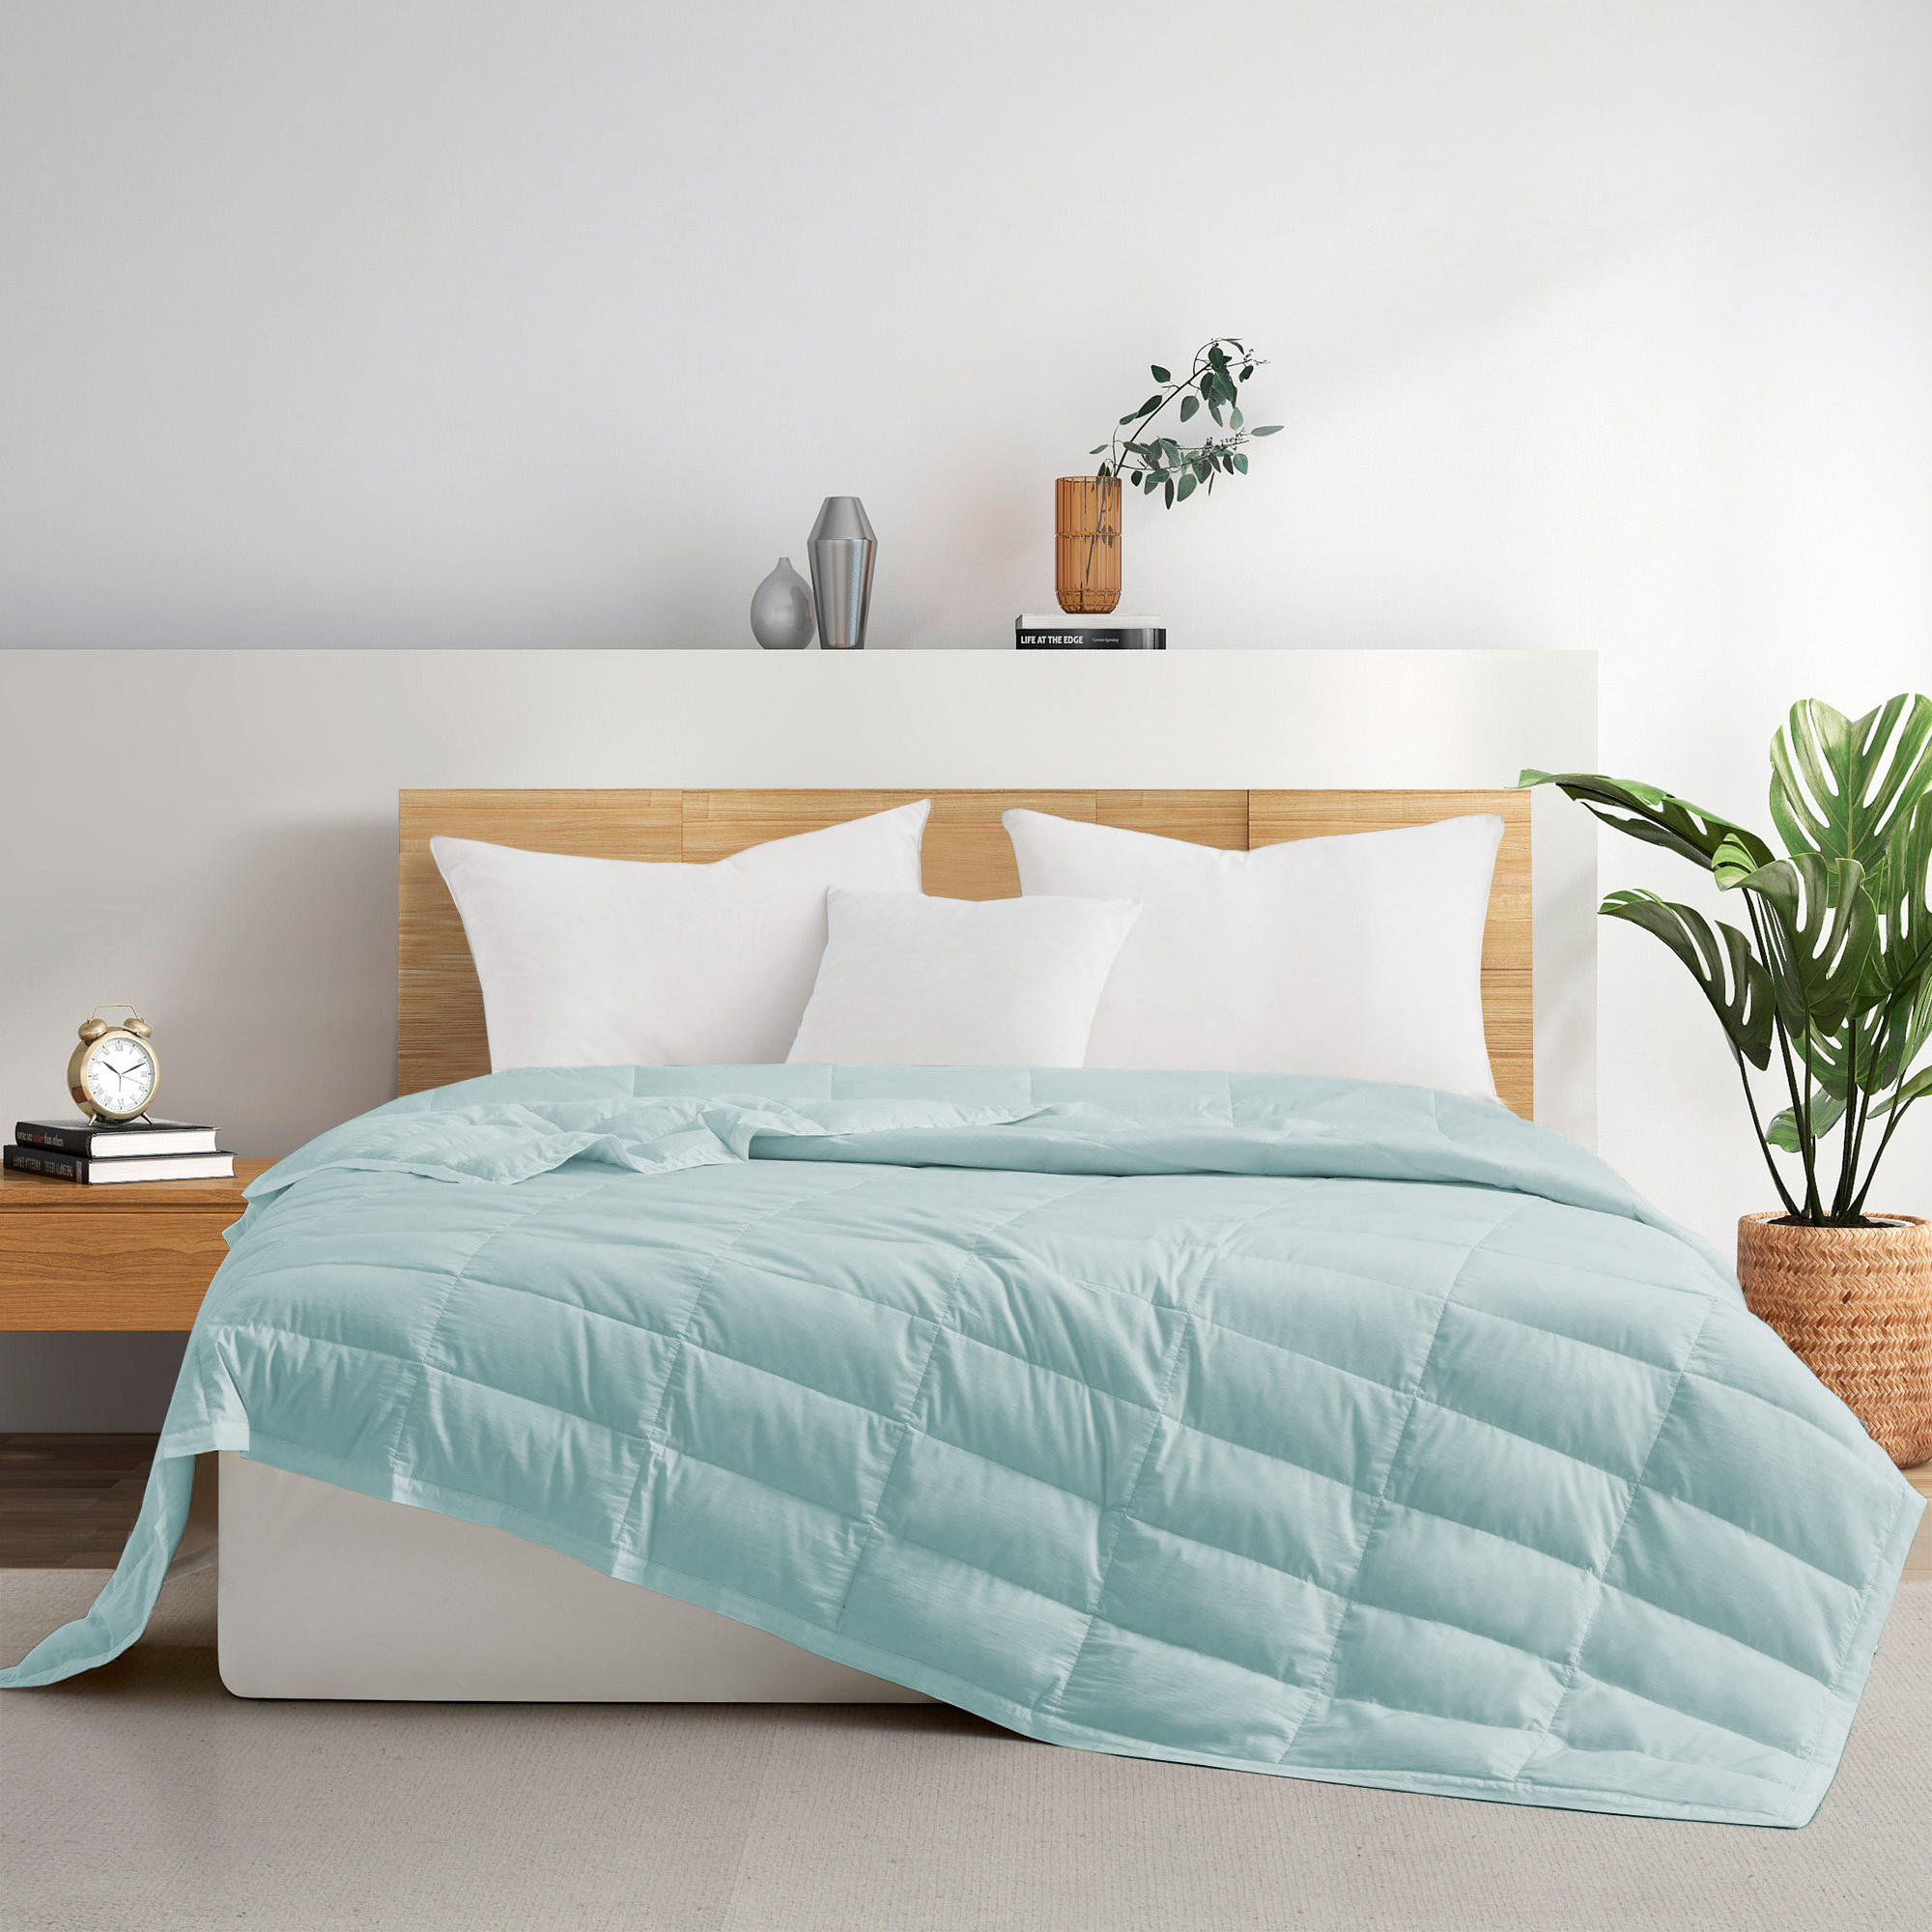 TENCELâ¢ Lyocell Lightweight Cooling Down Blanket-Luxurious Comfort Summer Blanket - Shell Pink, King